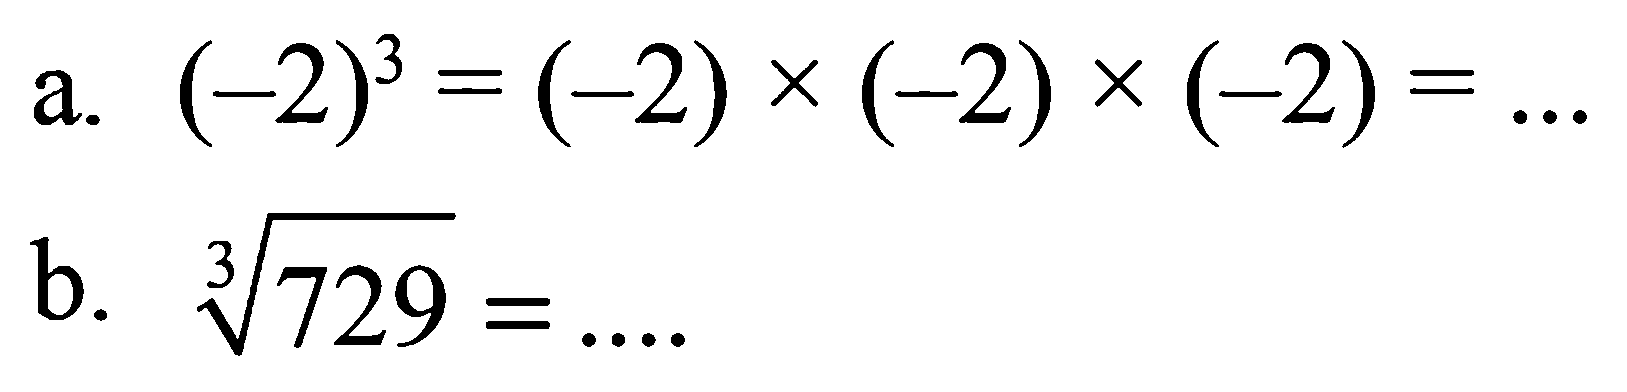 a. (-2)^3 = (-2) x (-2) x (-2) = ... b. 729^(1/3) = ....